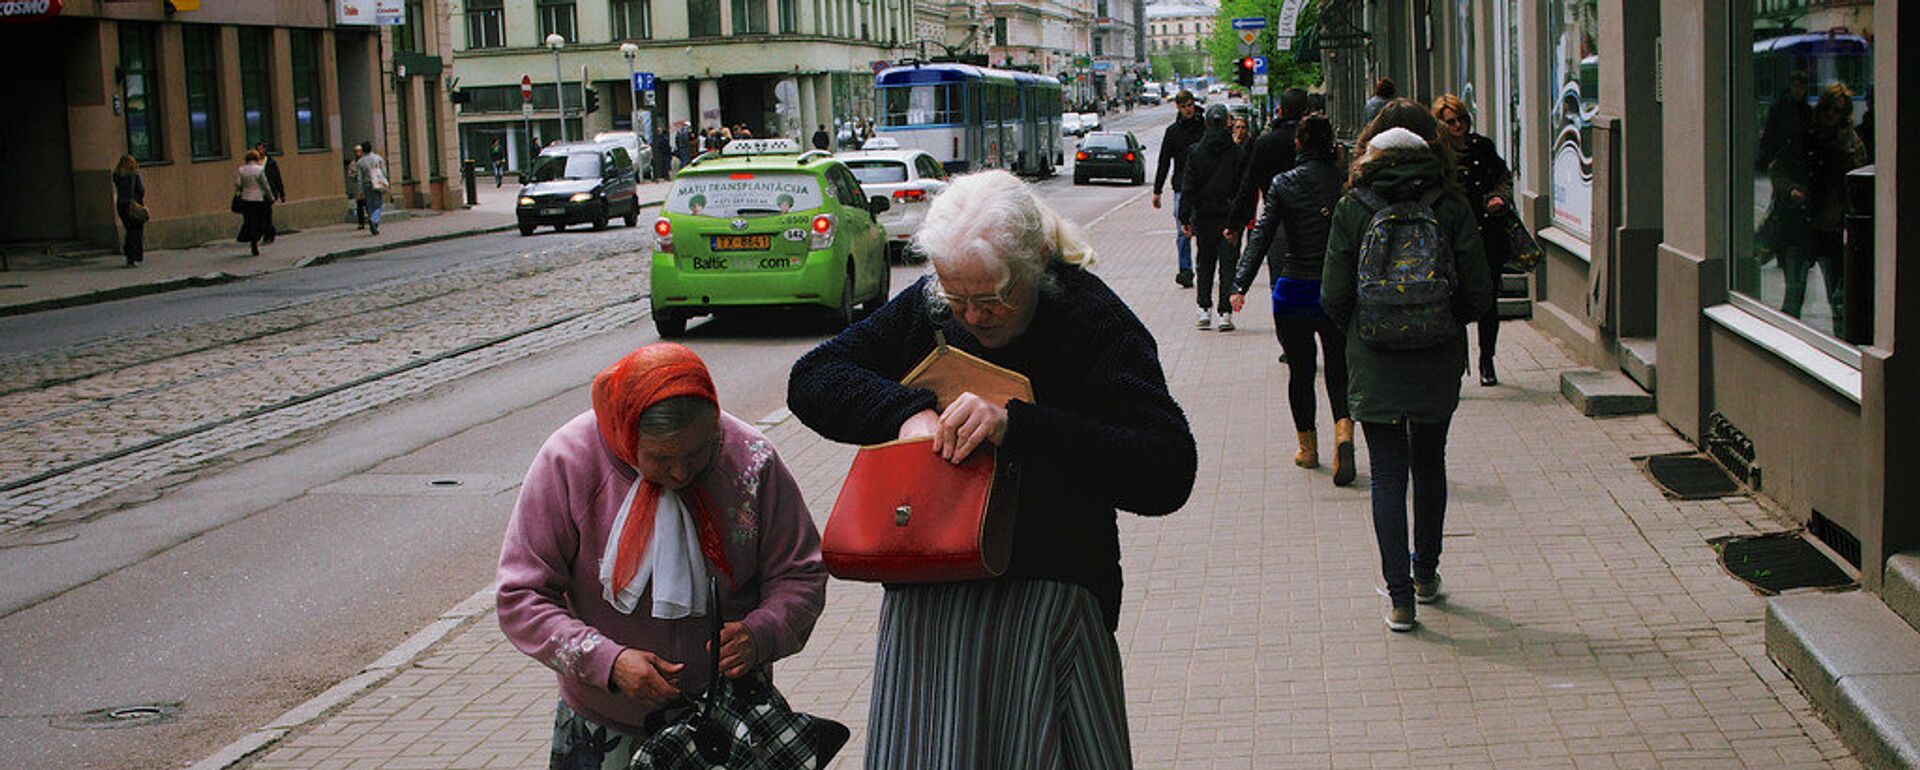 Женщины на улице в Риге - Sputnik Latvija, 1920, 22.04.2020